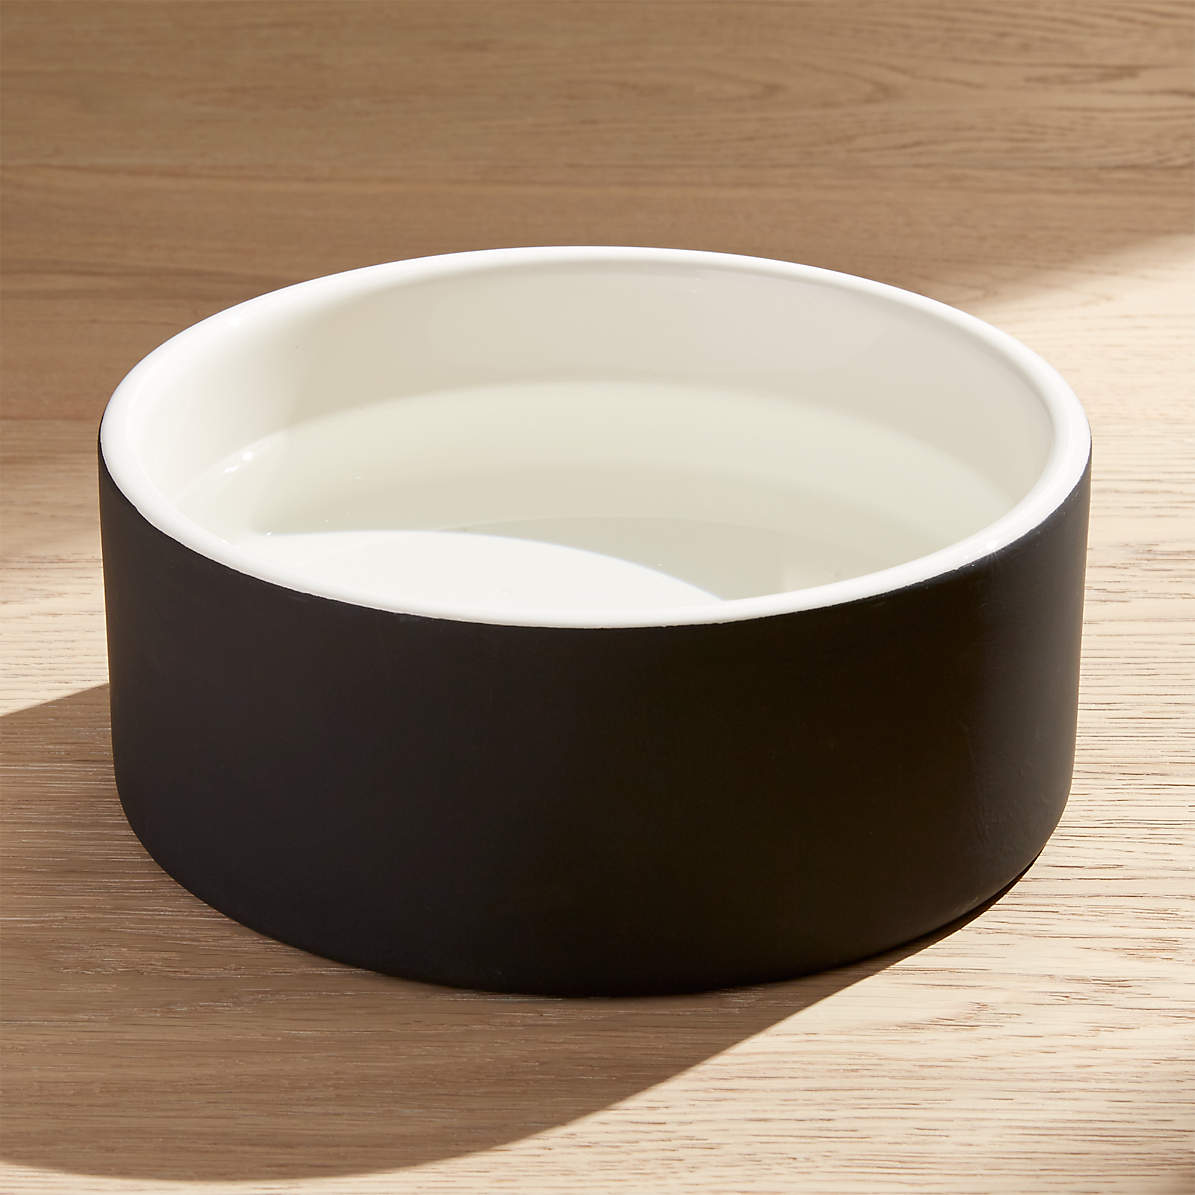 dog water bowl